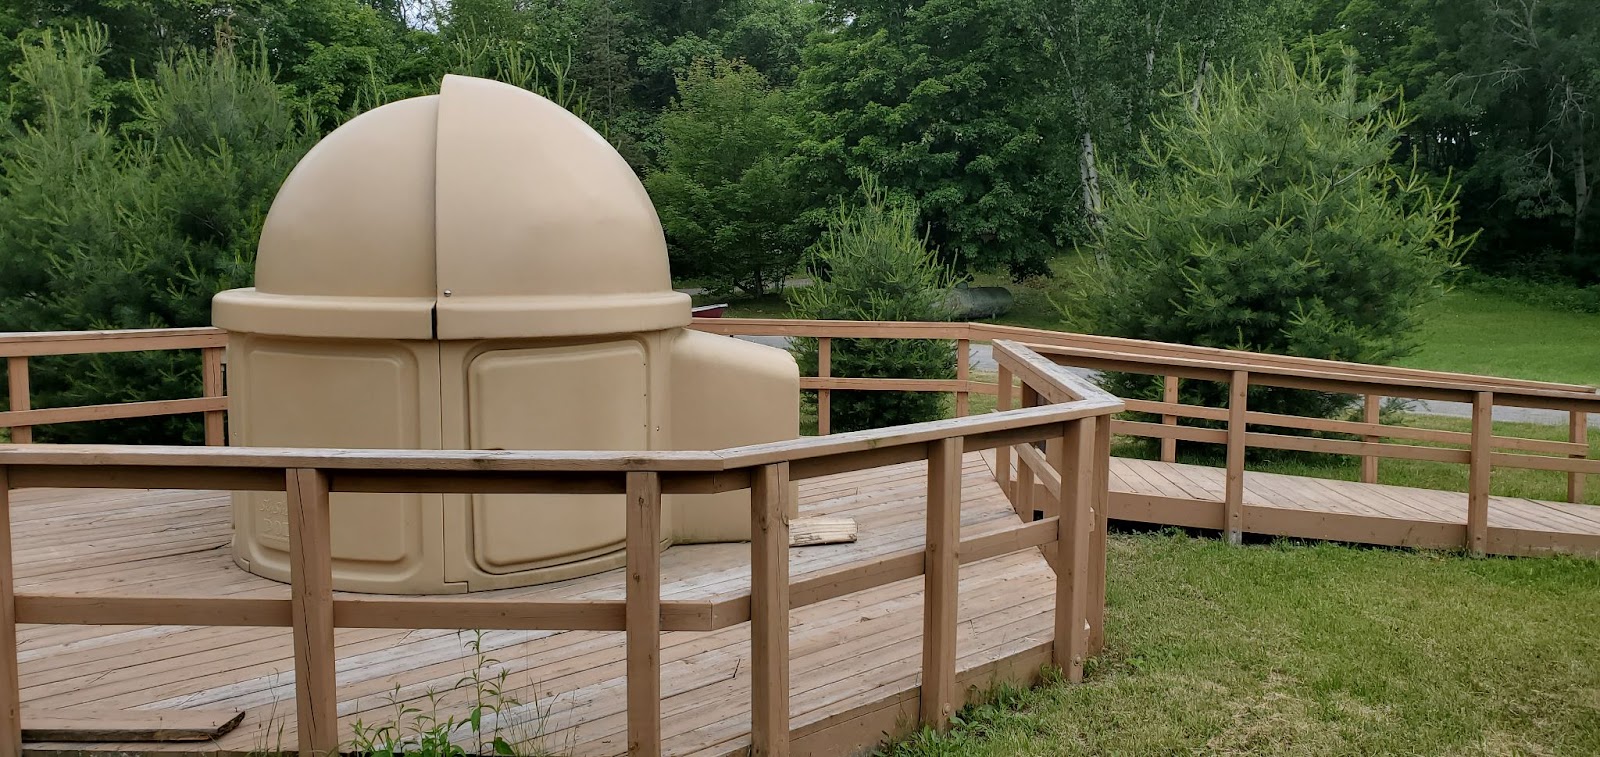 Telescope at Killarney Park